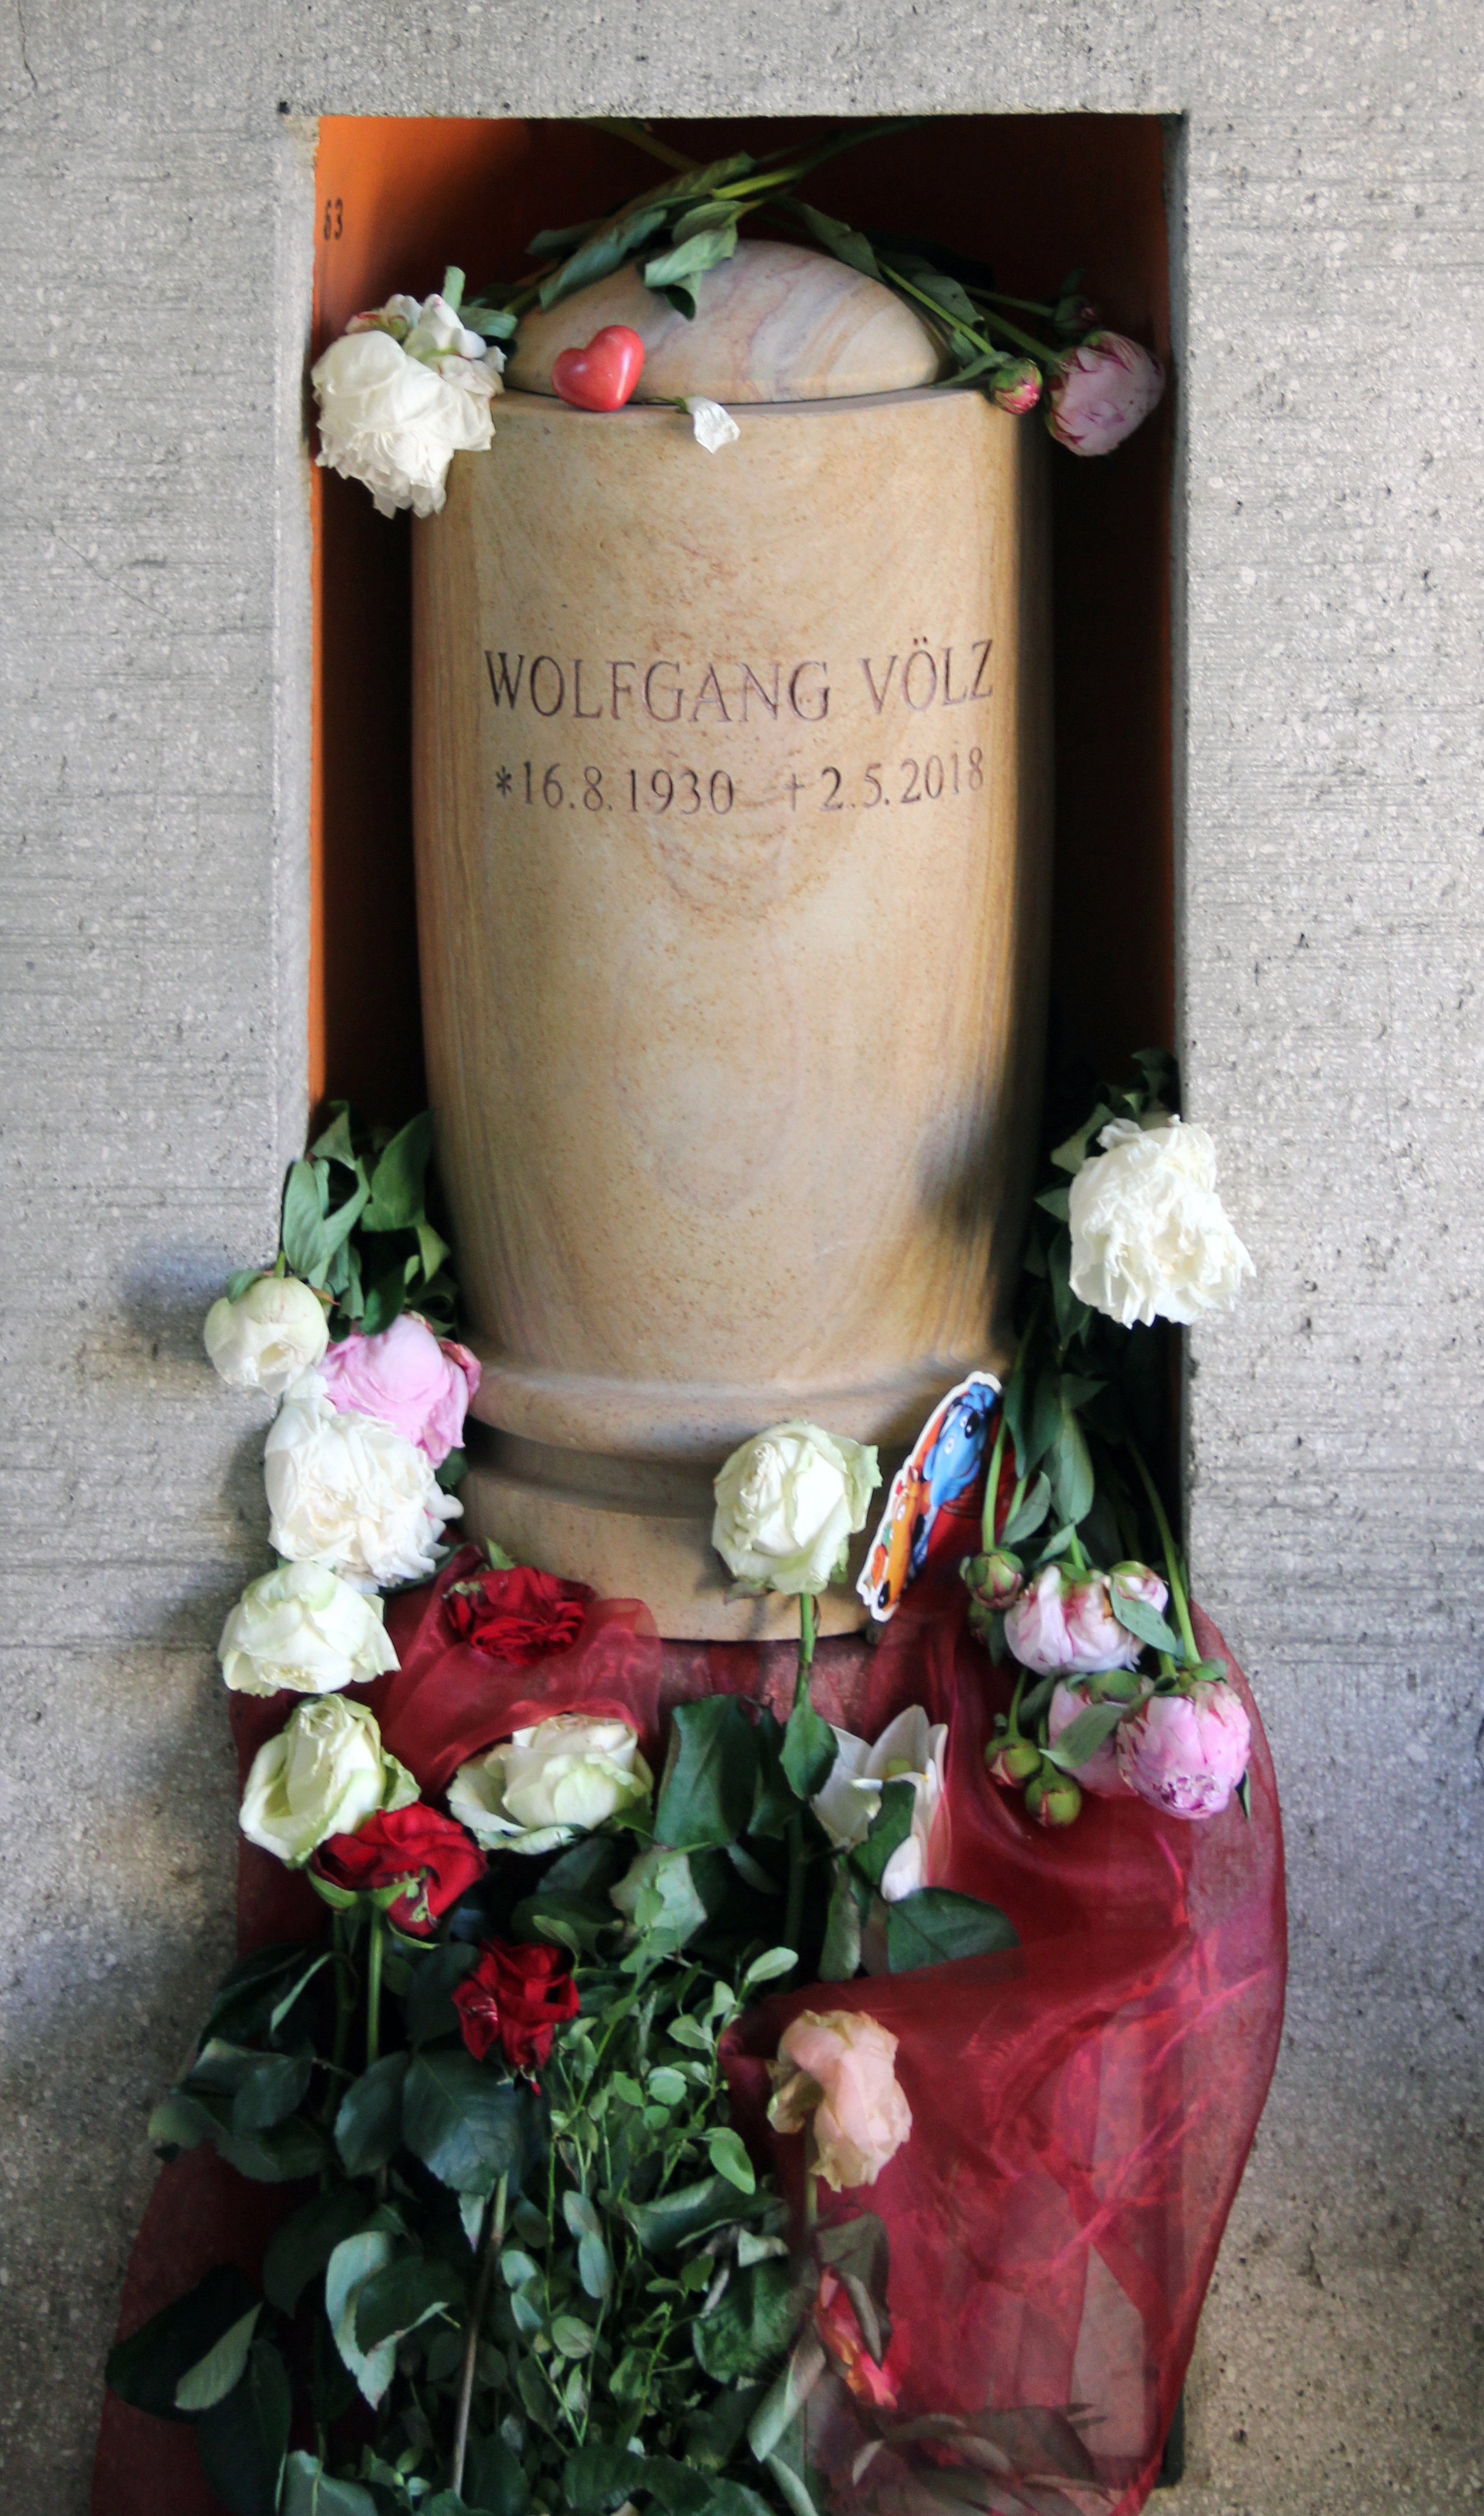 Das Grab von Wolfgang Völz auf dem Friedhof Wilmersdorf in Berlin